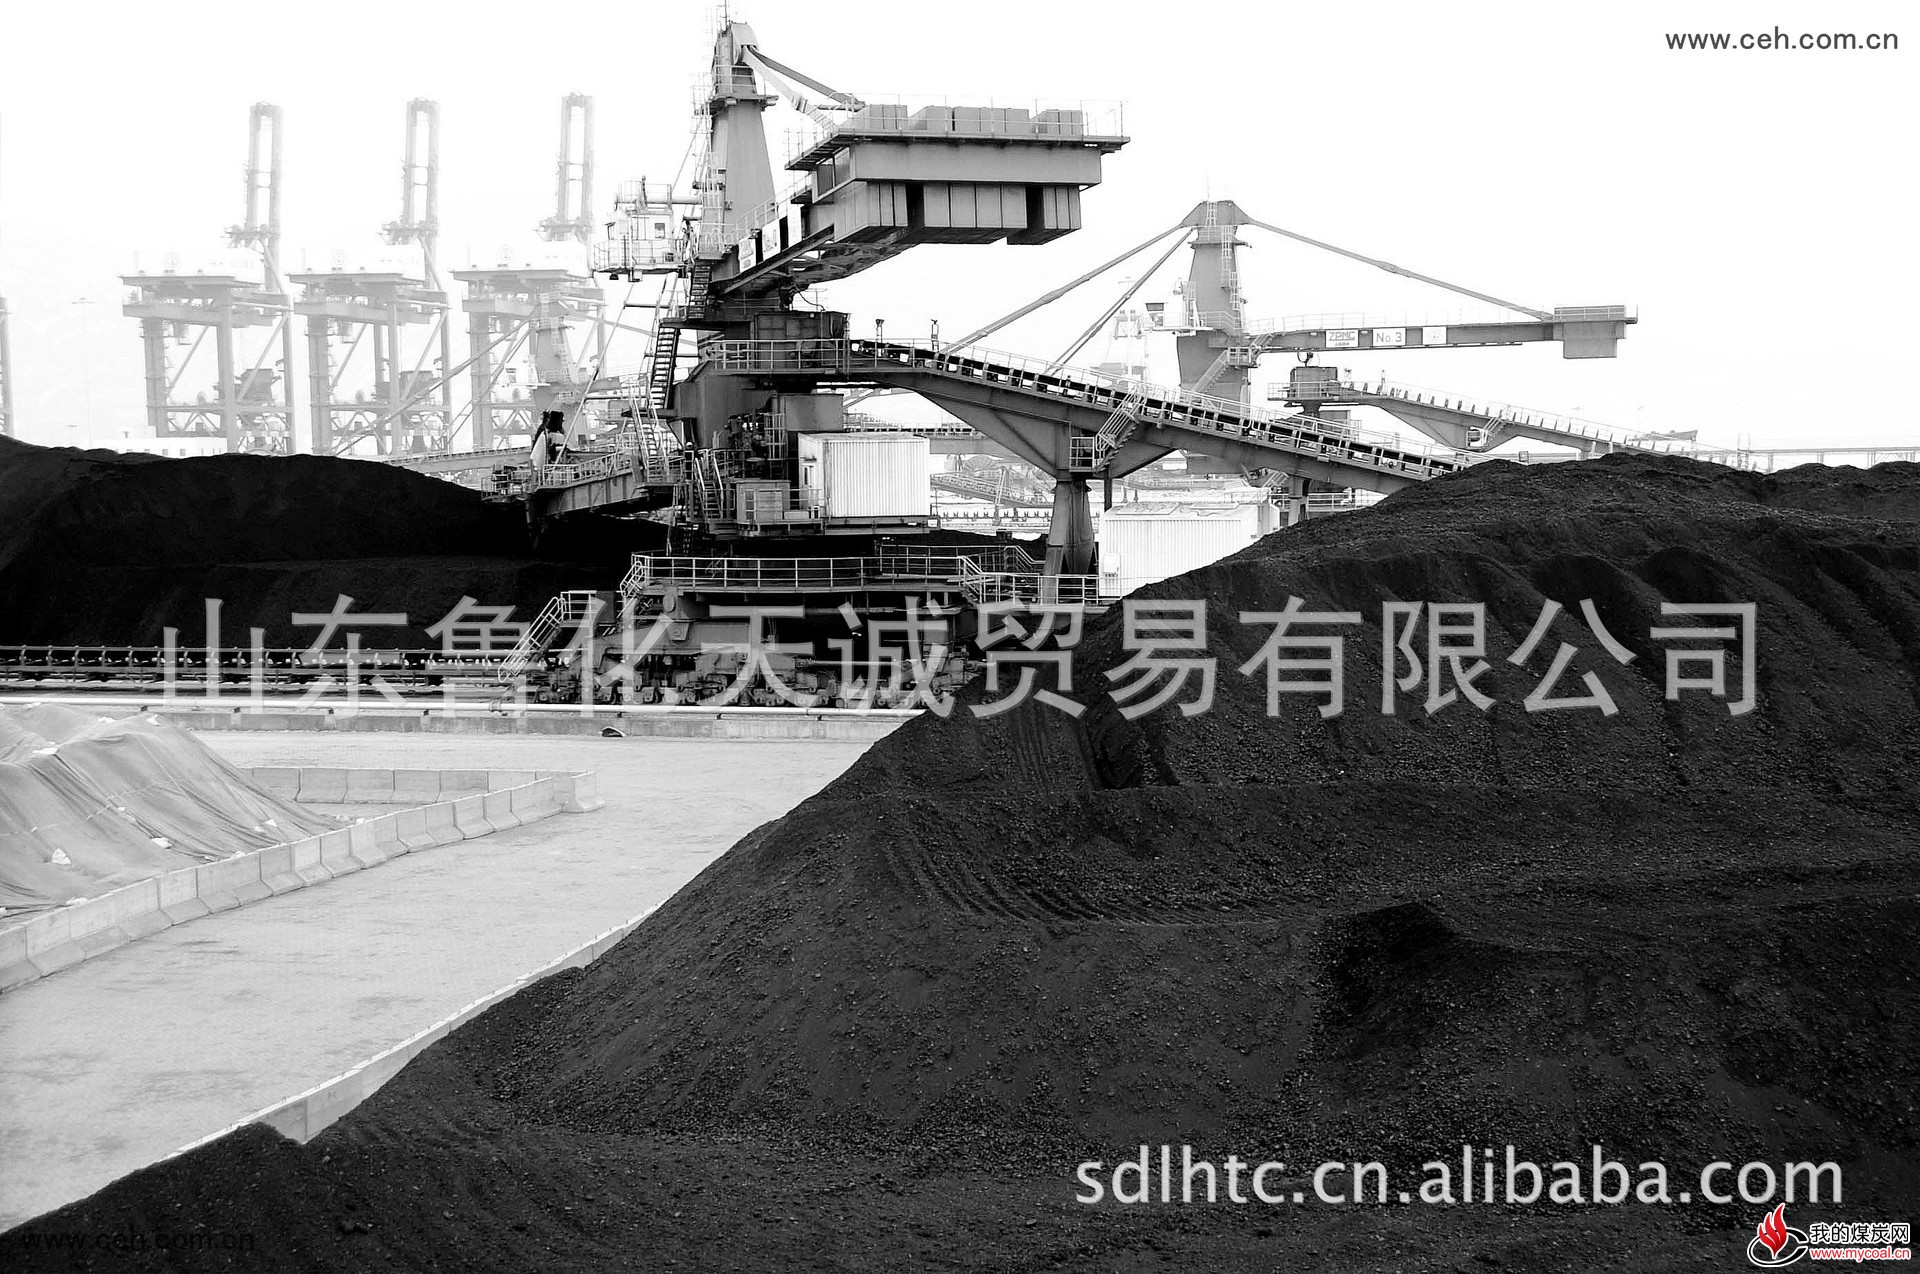 长期供应朝鲜煤 量大从优 欢迎选购